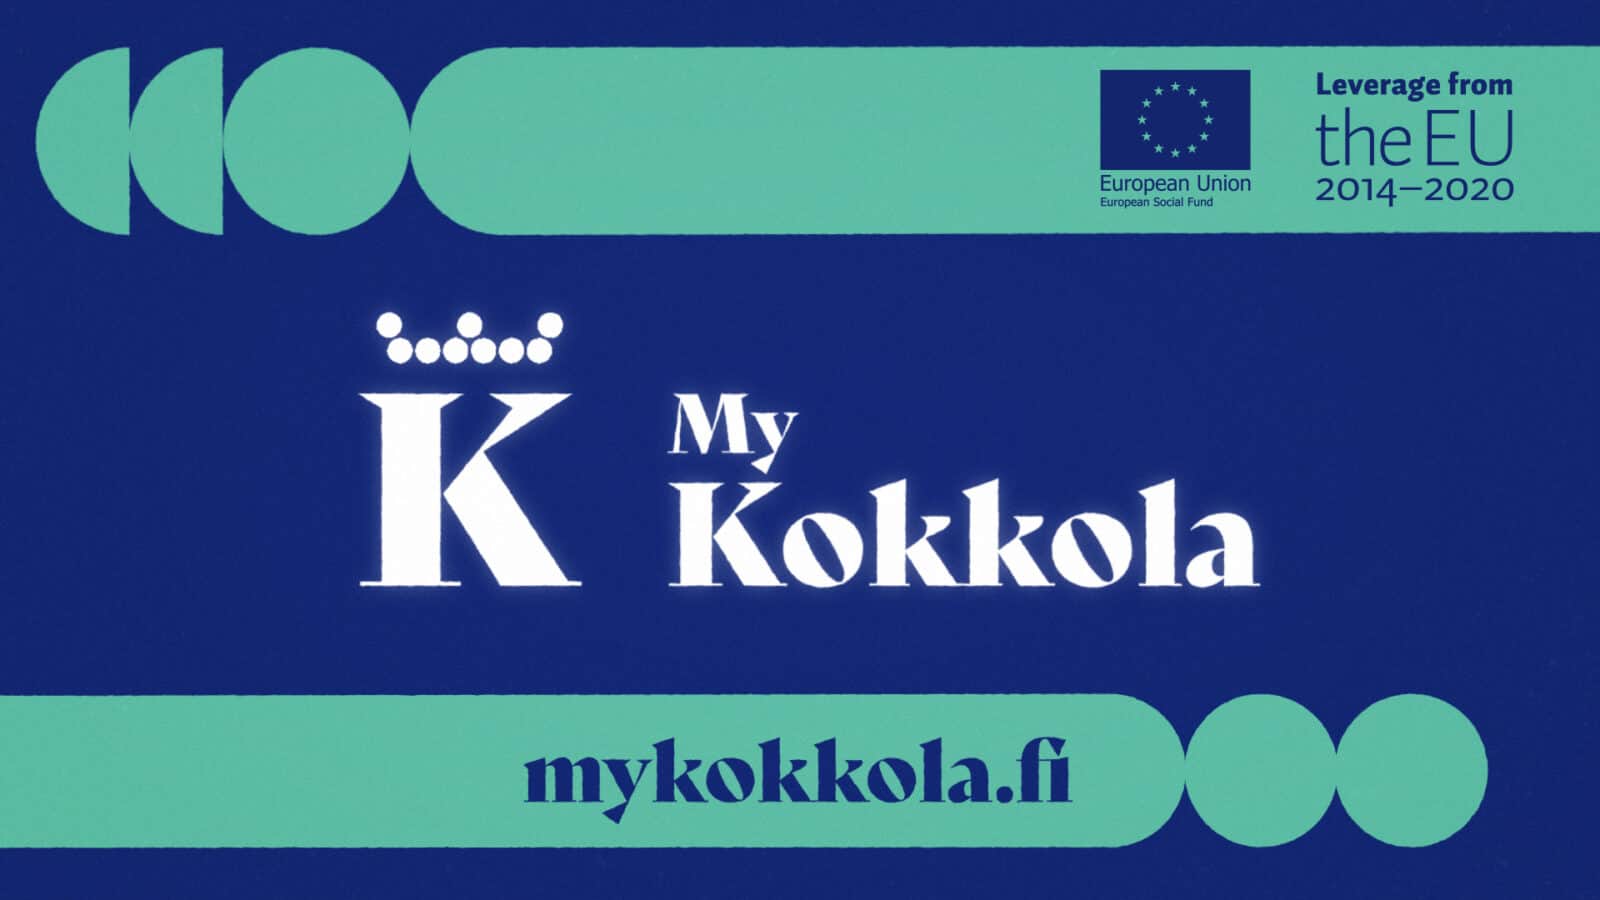 MyKokkola logo och websidan mykokkola.fi. Hävkraft från EU.